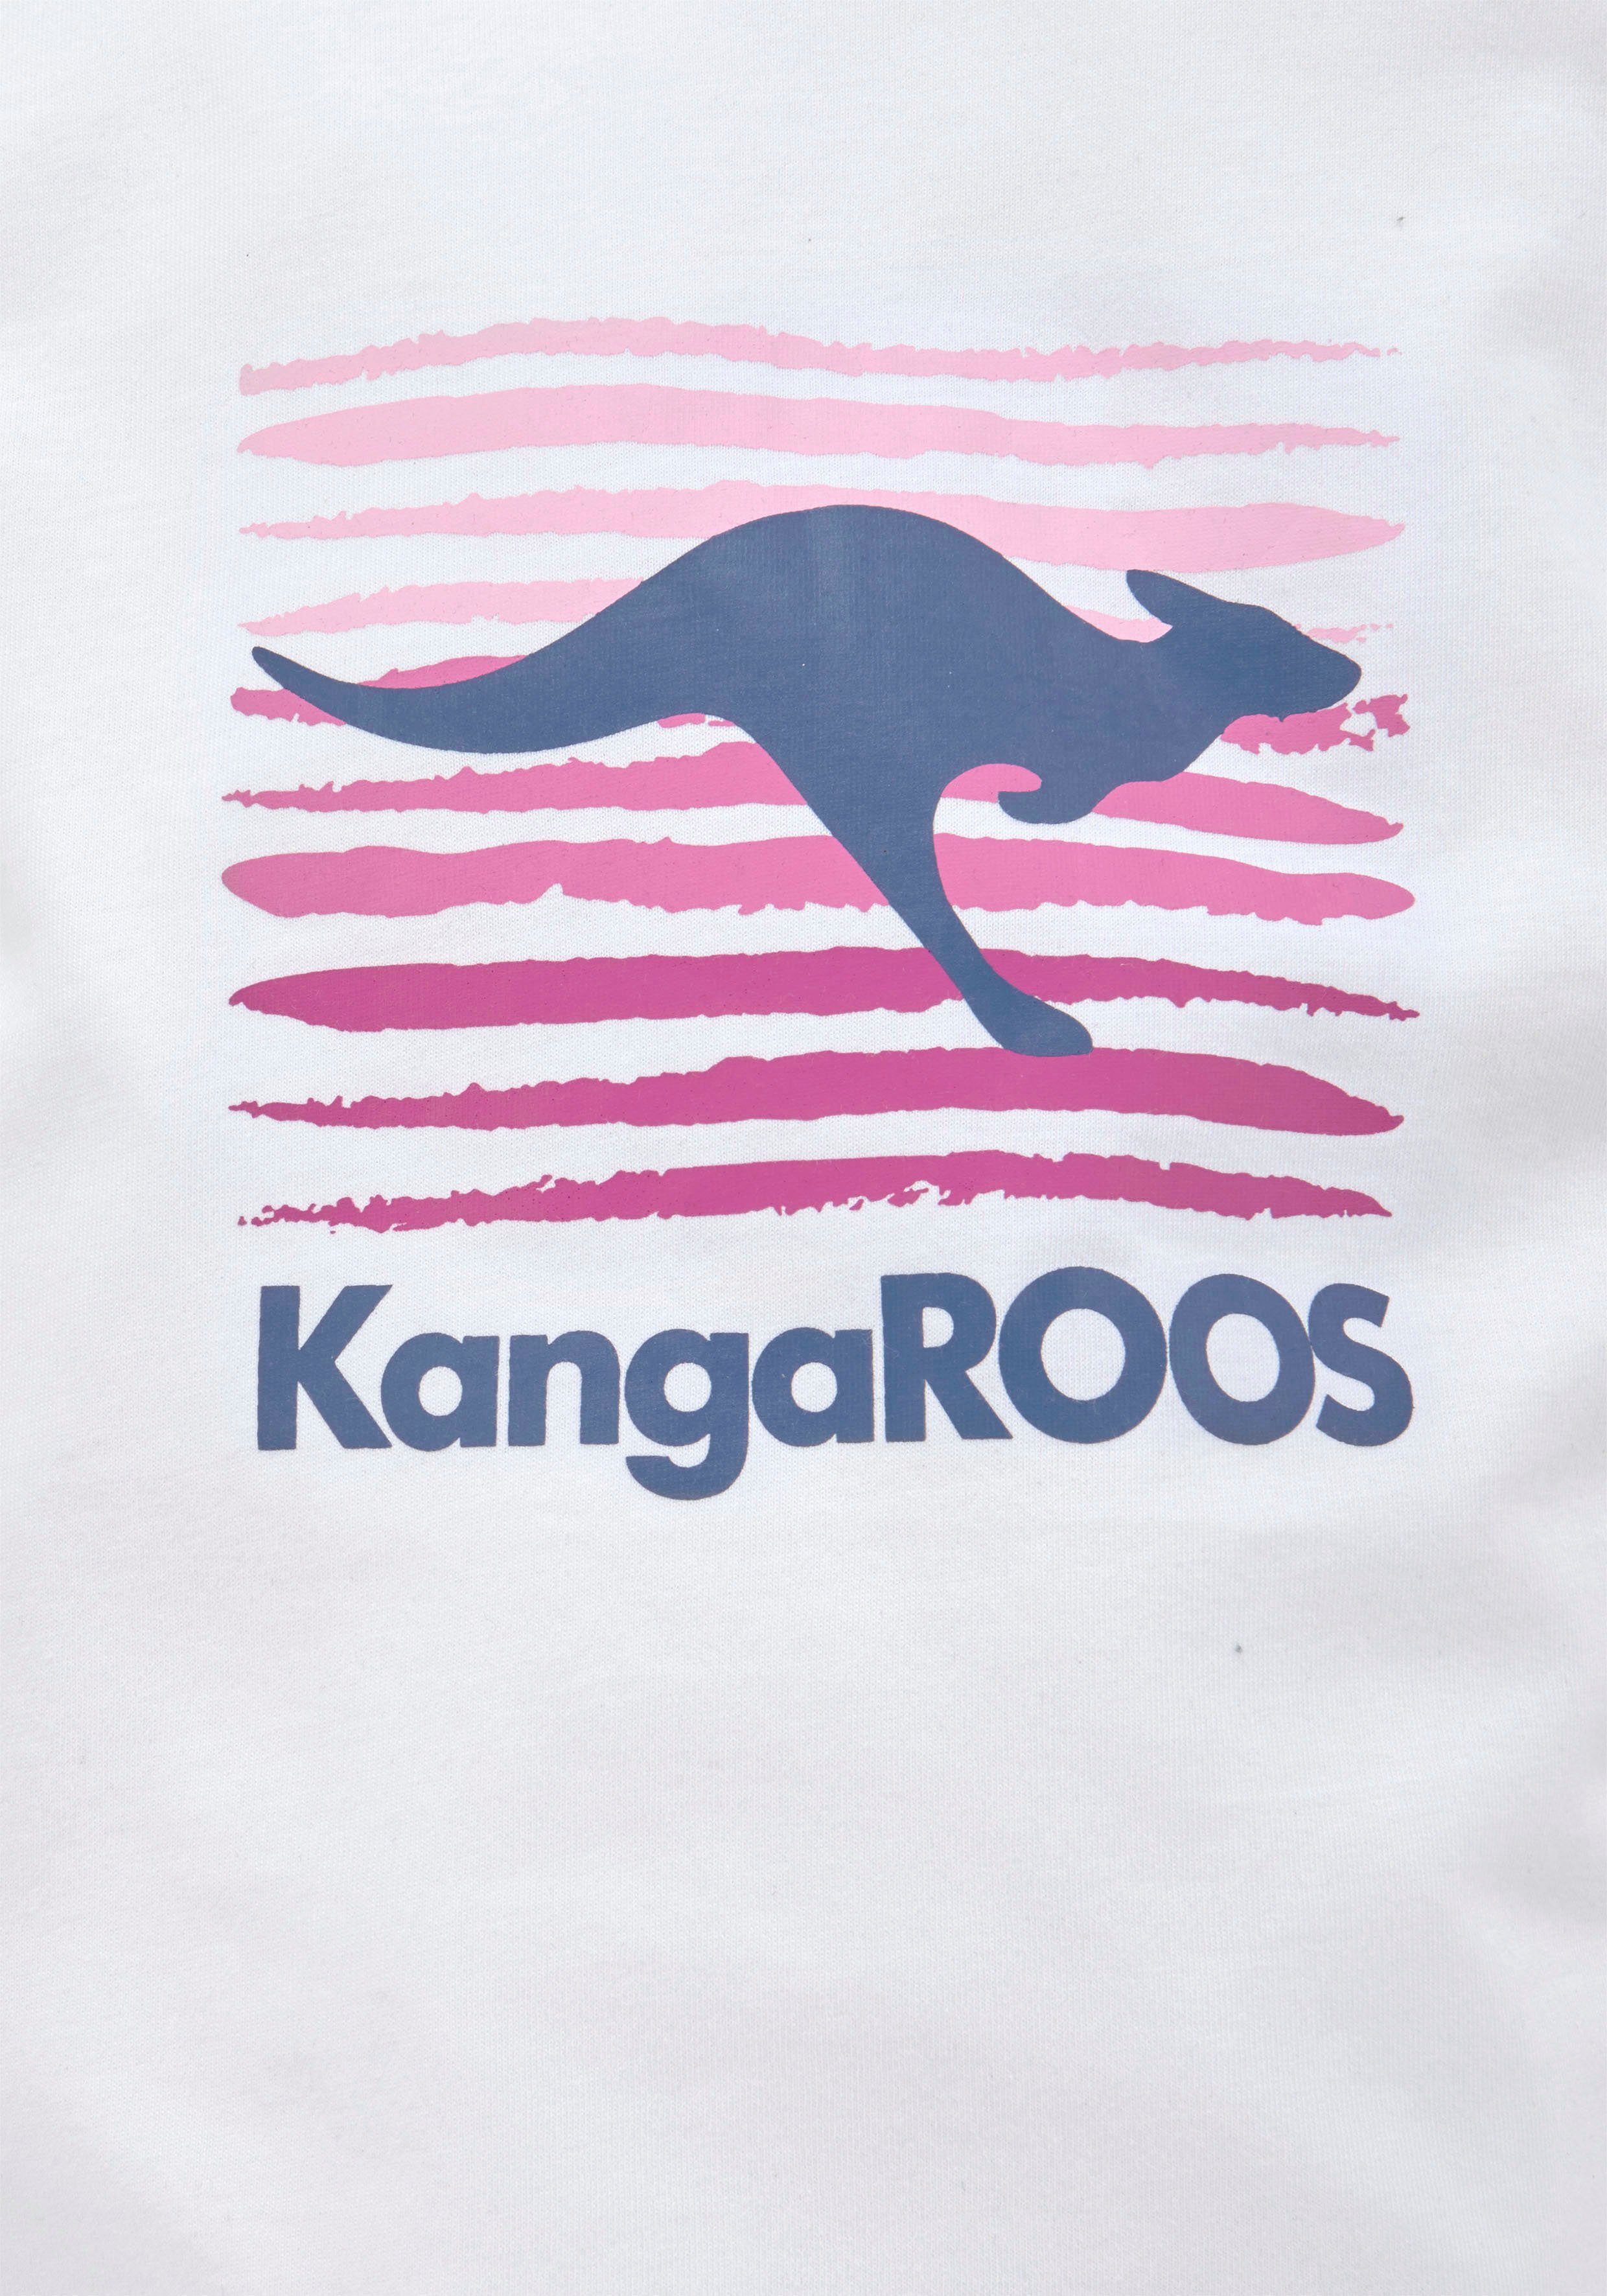 mit KangaROOS T-Shirt großem Logodruck